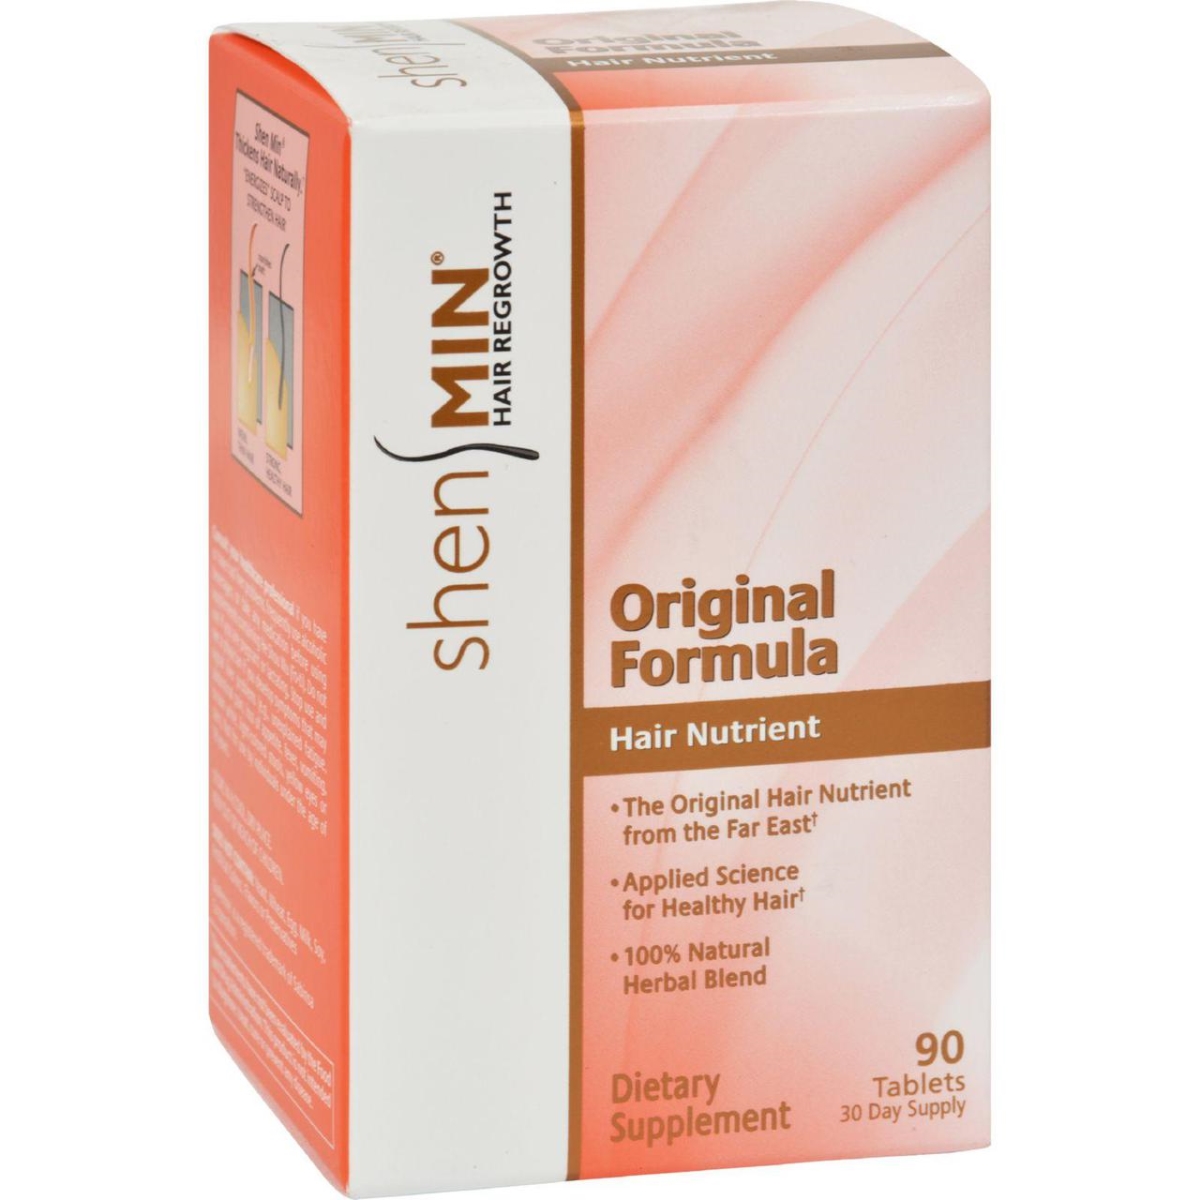 Hg0642421 Hair Nutrient Original Formula - 90 Tablets